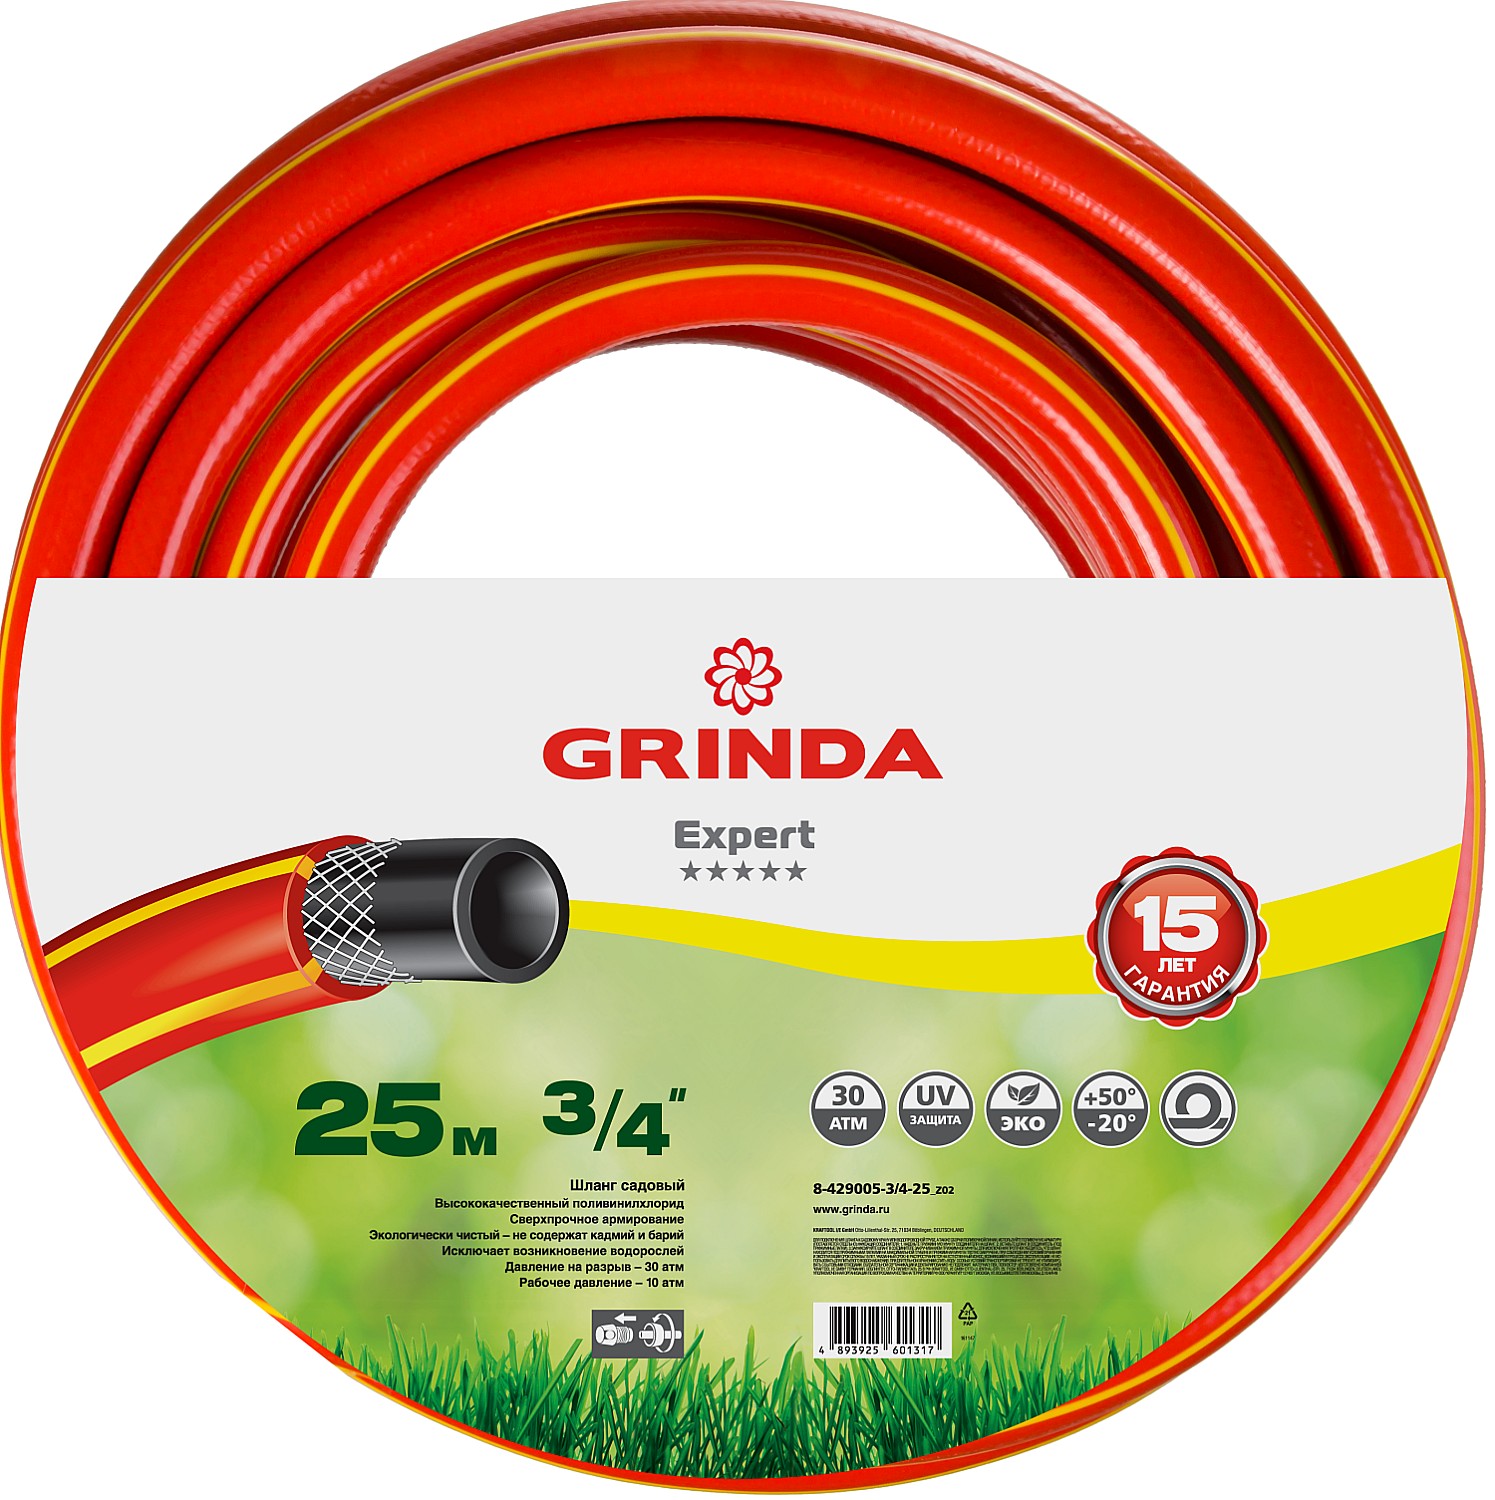 Шланг для полива Grinda Expert 8-429005-3/4-25_z02 3/4 25 м - купить в Москве, цены на Мегамаркет